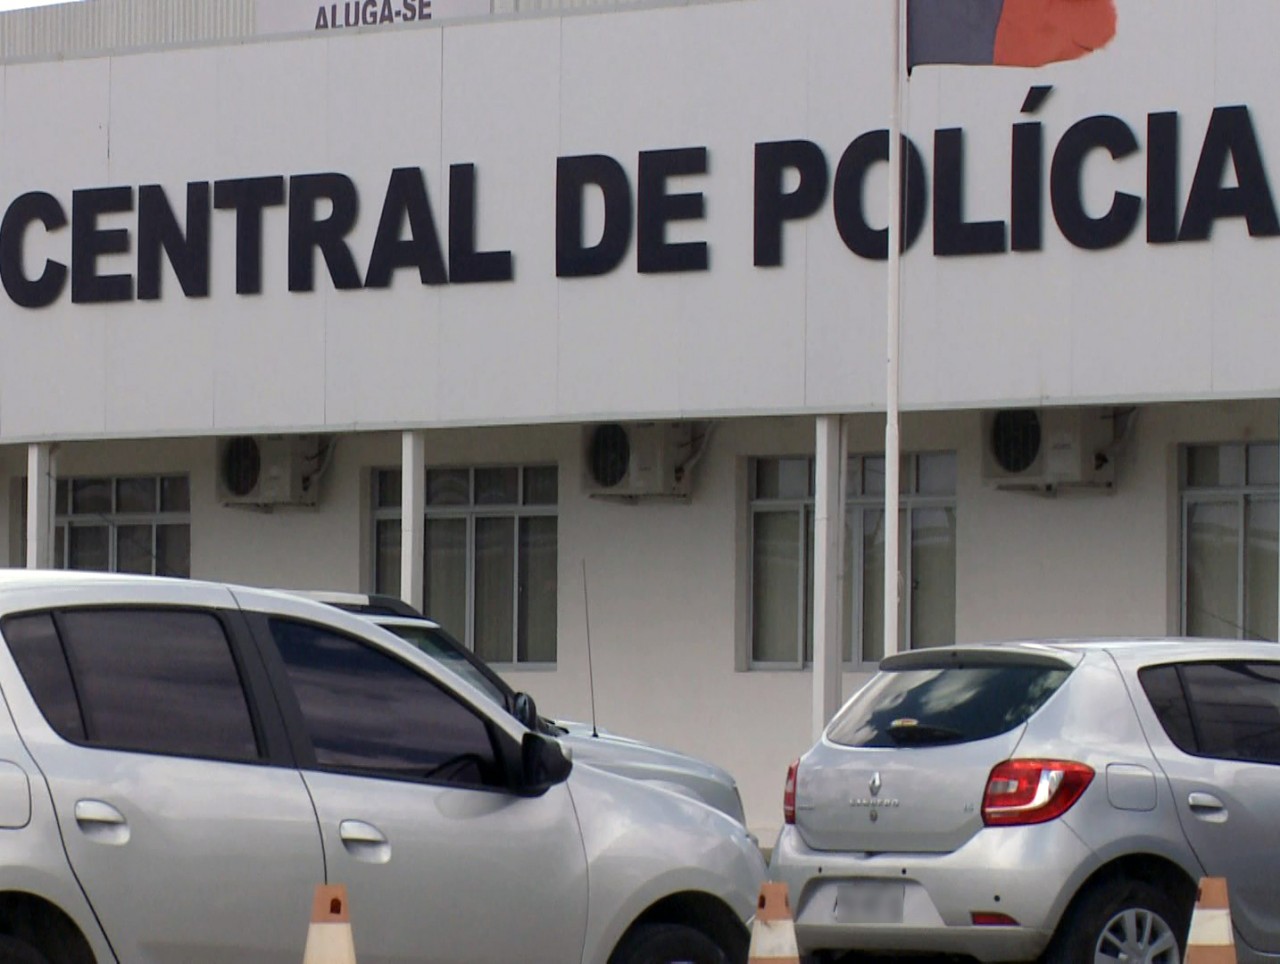 Central de Polícia Civil em João Pessoa - OPERAÇÃO ANFÍBIOS: Polícia Civil e Militar prende grupo suspeito de envolvimento com tráfico de drogas em Santa Rita